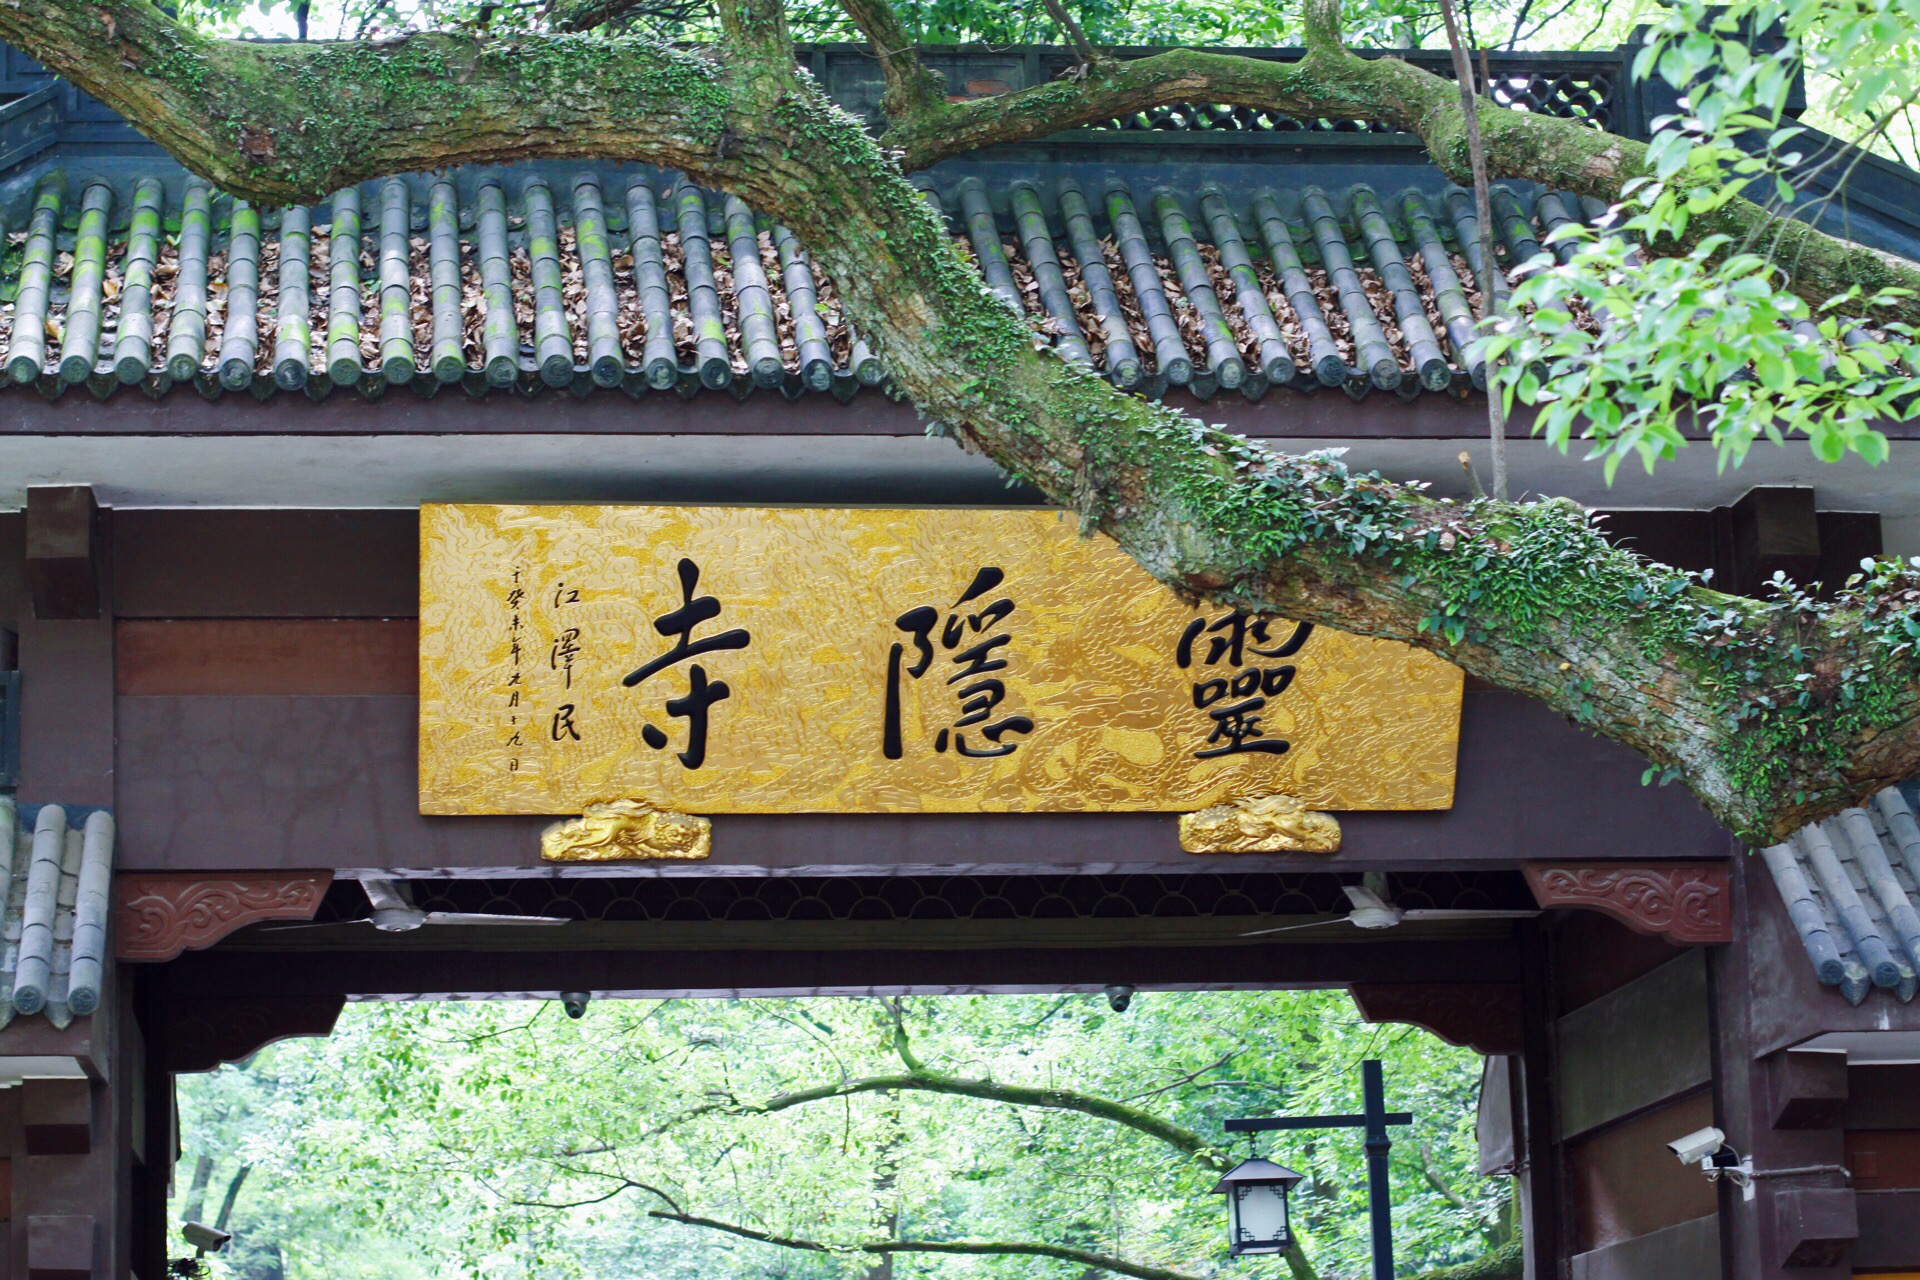 灵隐寺,创建于东晋咸和元年,距今已有1670多年历史,又名云林寺.